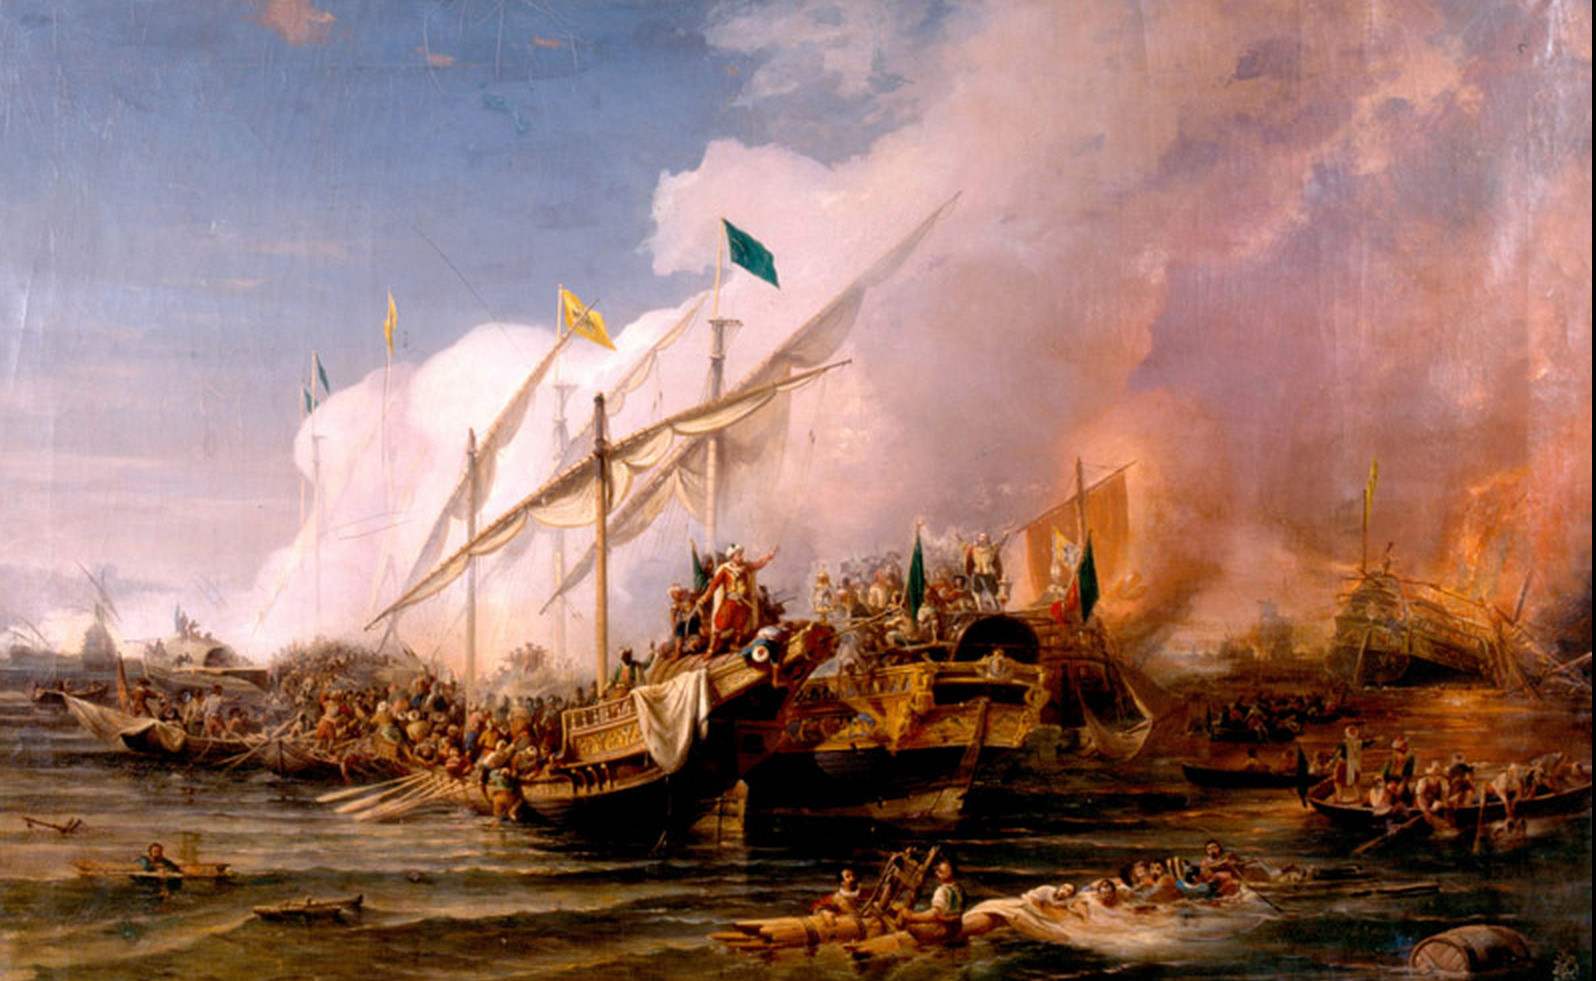 Preveze Deniz Muharebesi'ni tasvir eden Osman Nûri Paşa'nın yağlı boya tablosu (İstanbul Deniz Müzesi).